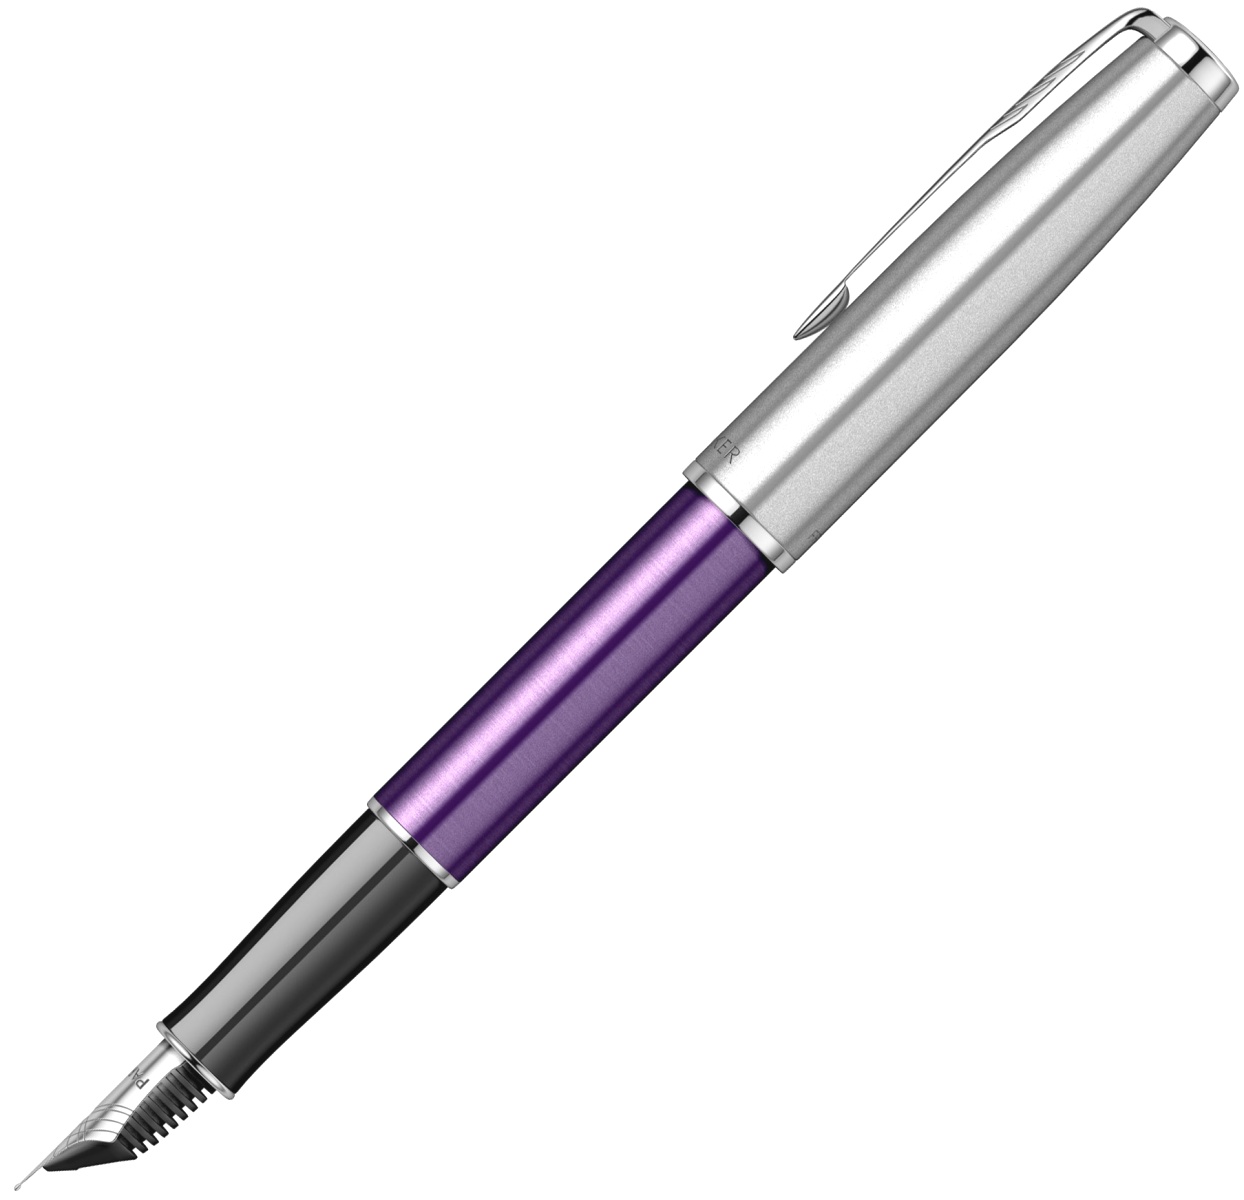  Ручка перьевая Parker Sonnet Essential SB F545, Violet CT (Перо F), фото 2